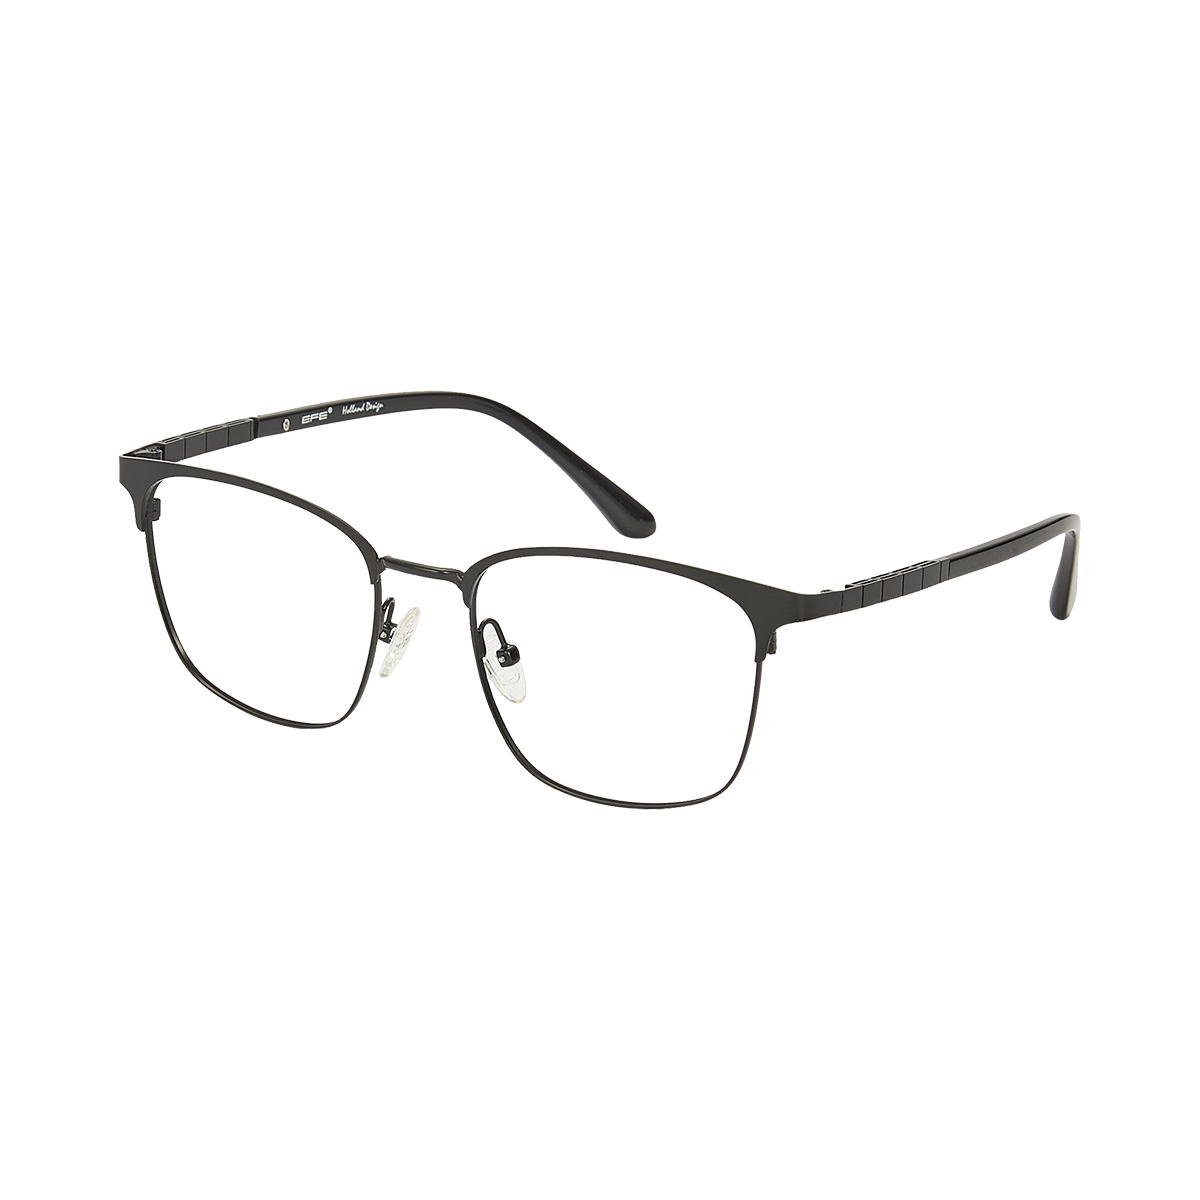 Talos - Square Black Reading Glasses for Men